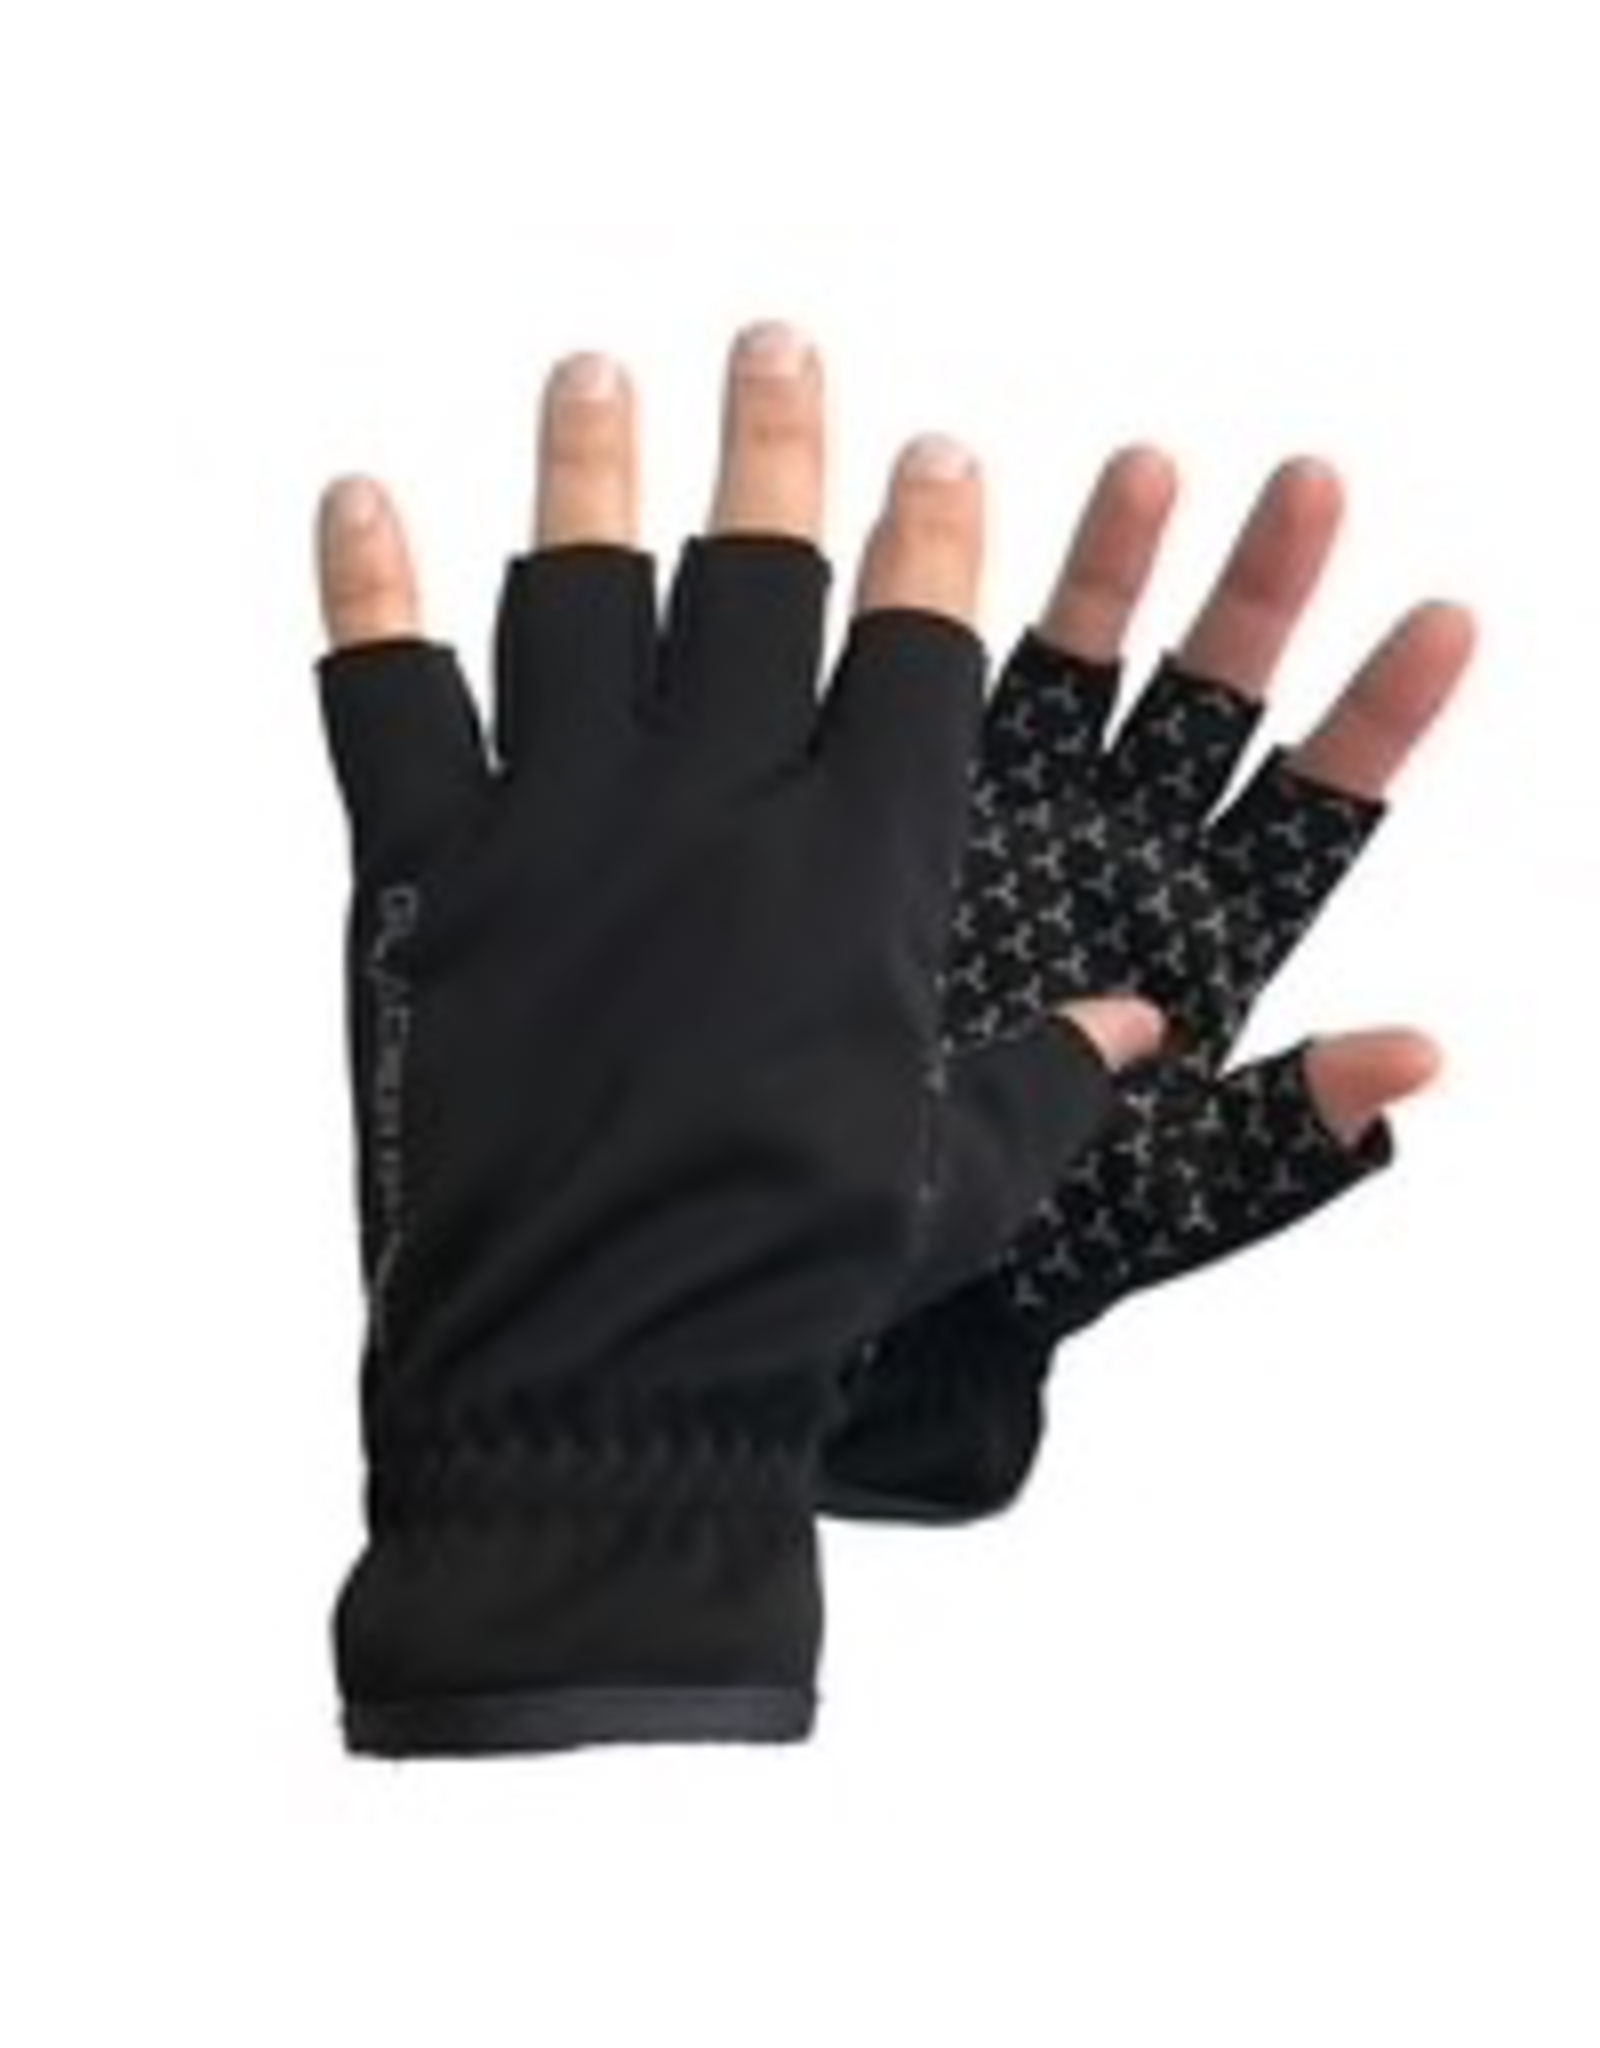 where can i get fingerless gloves